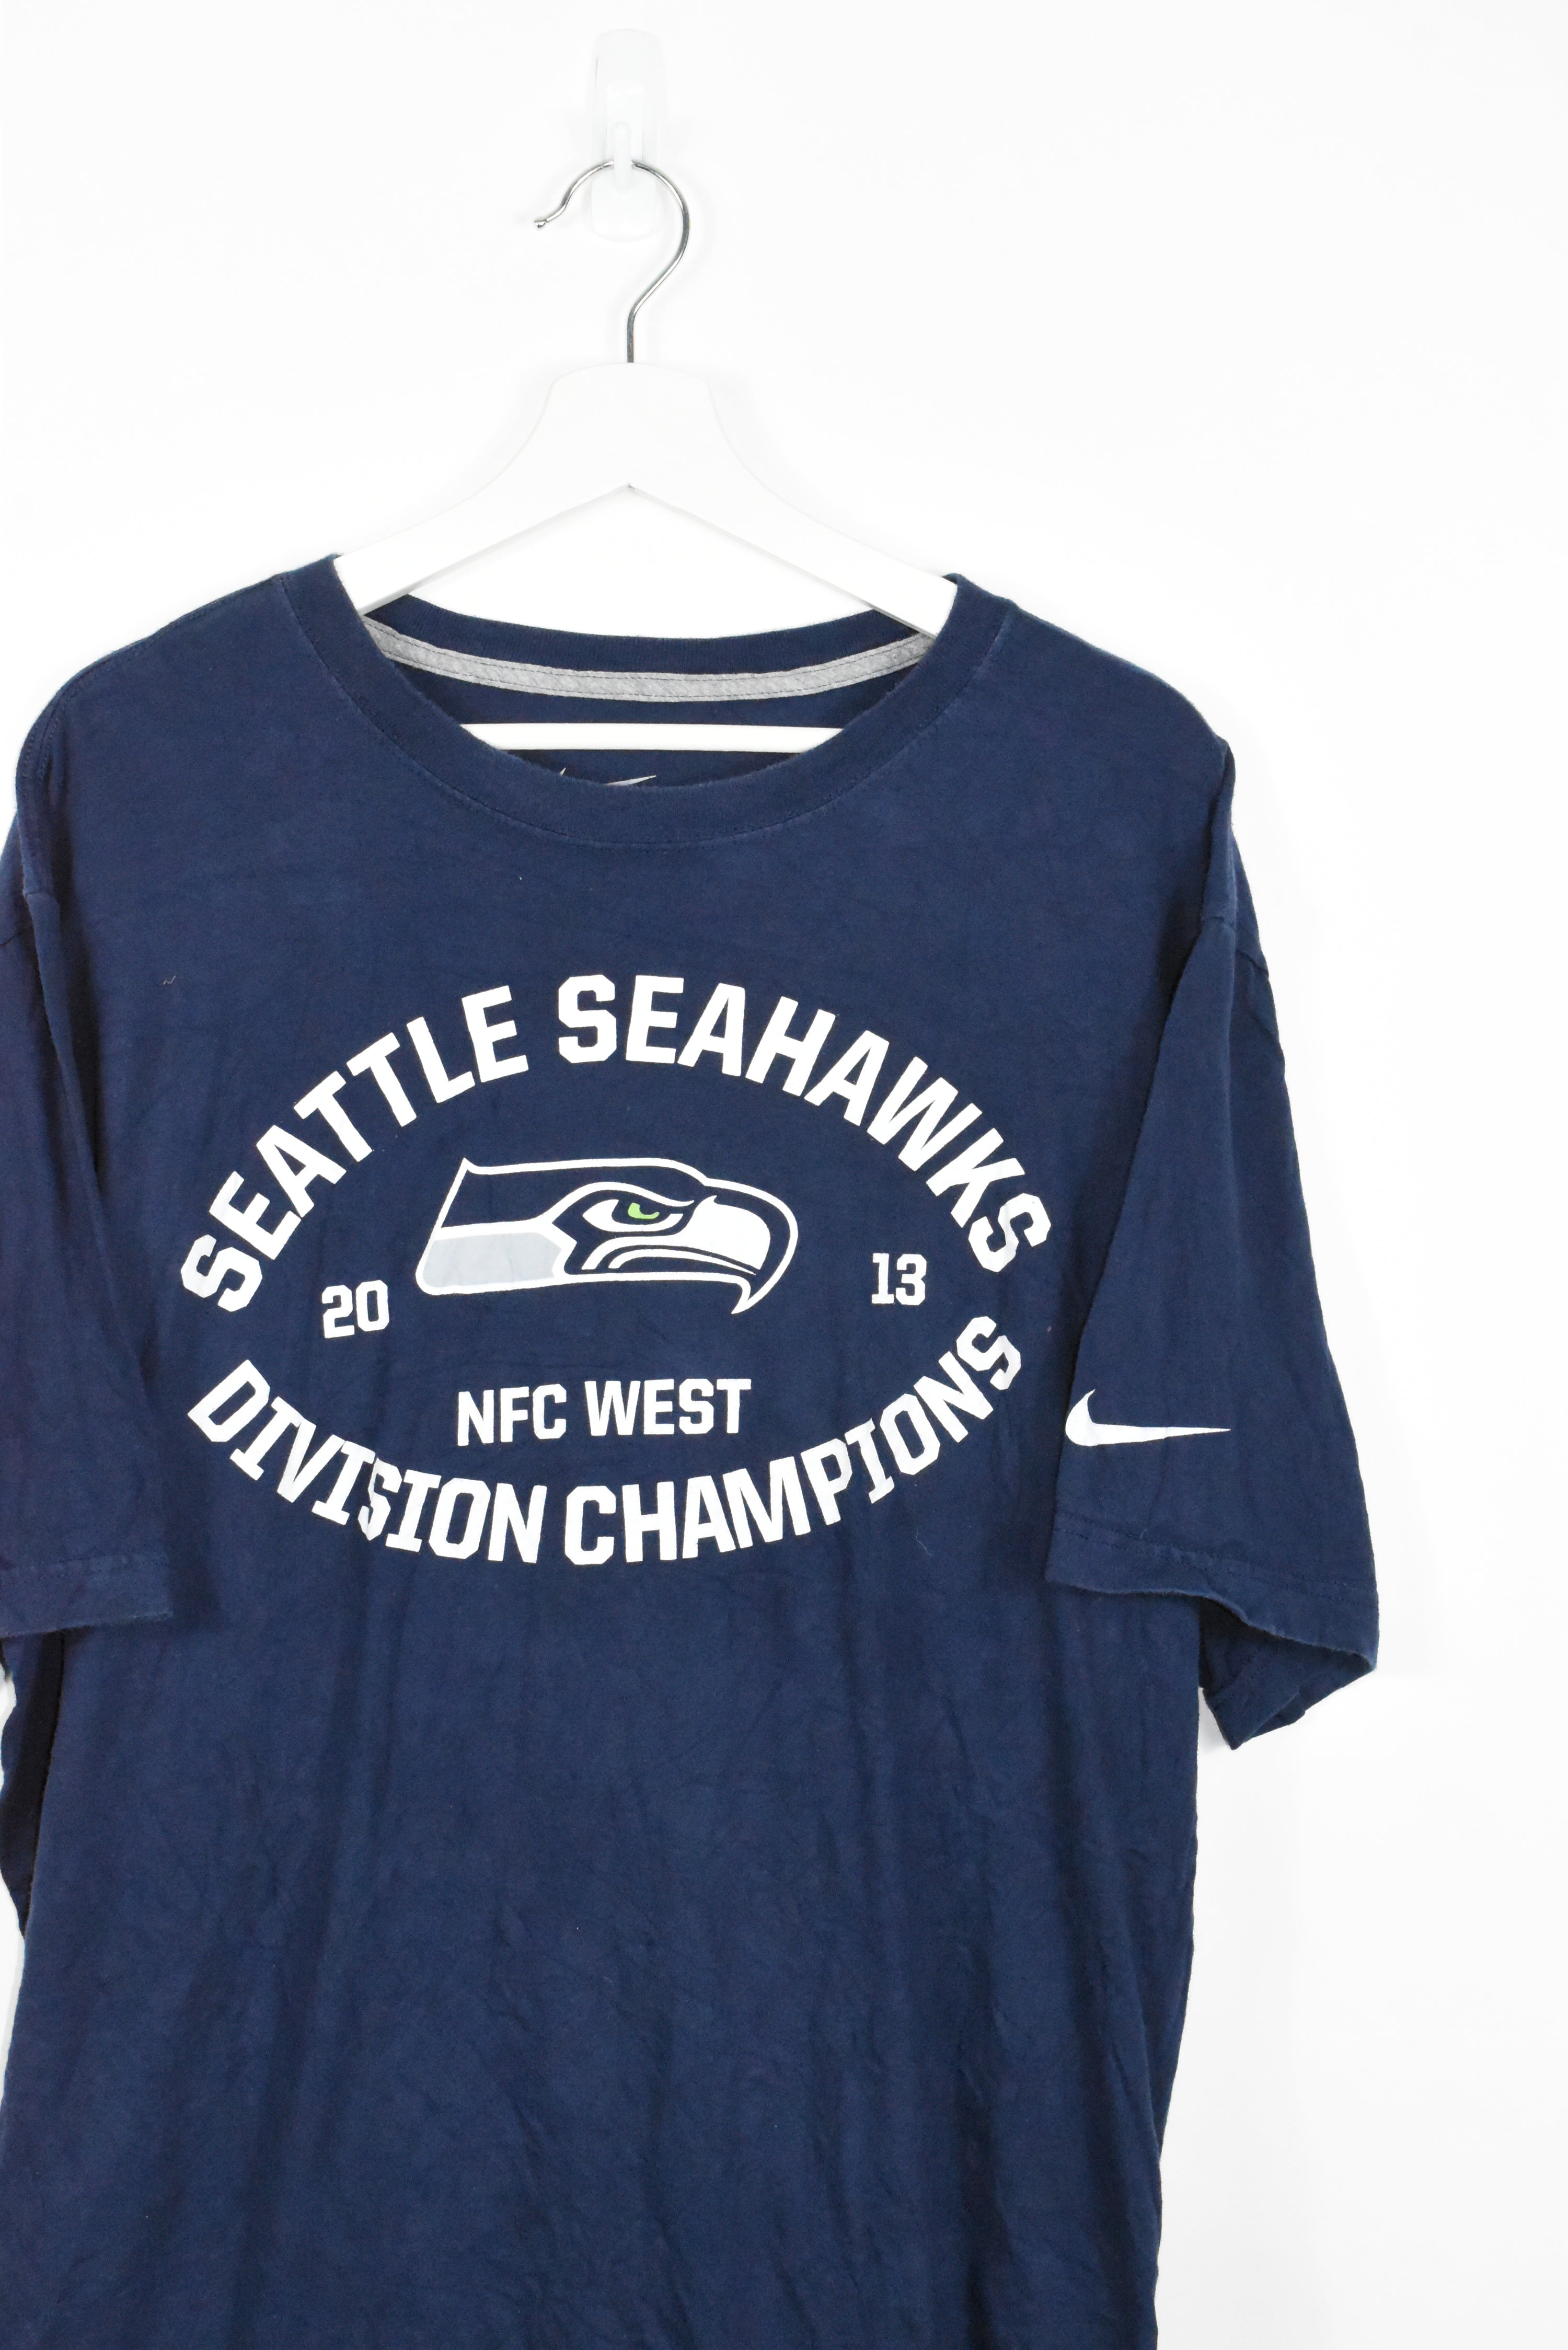 Vintage Nike Seattle Seahawks Tee XLARGE